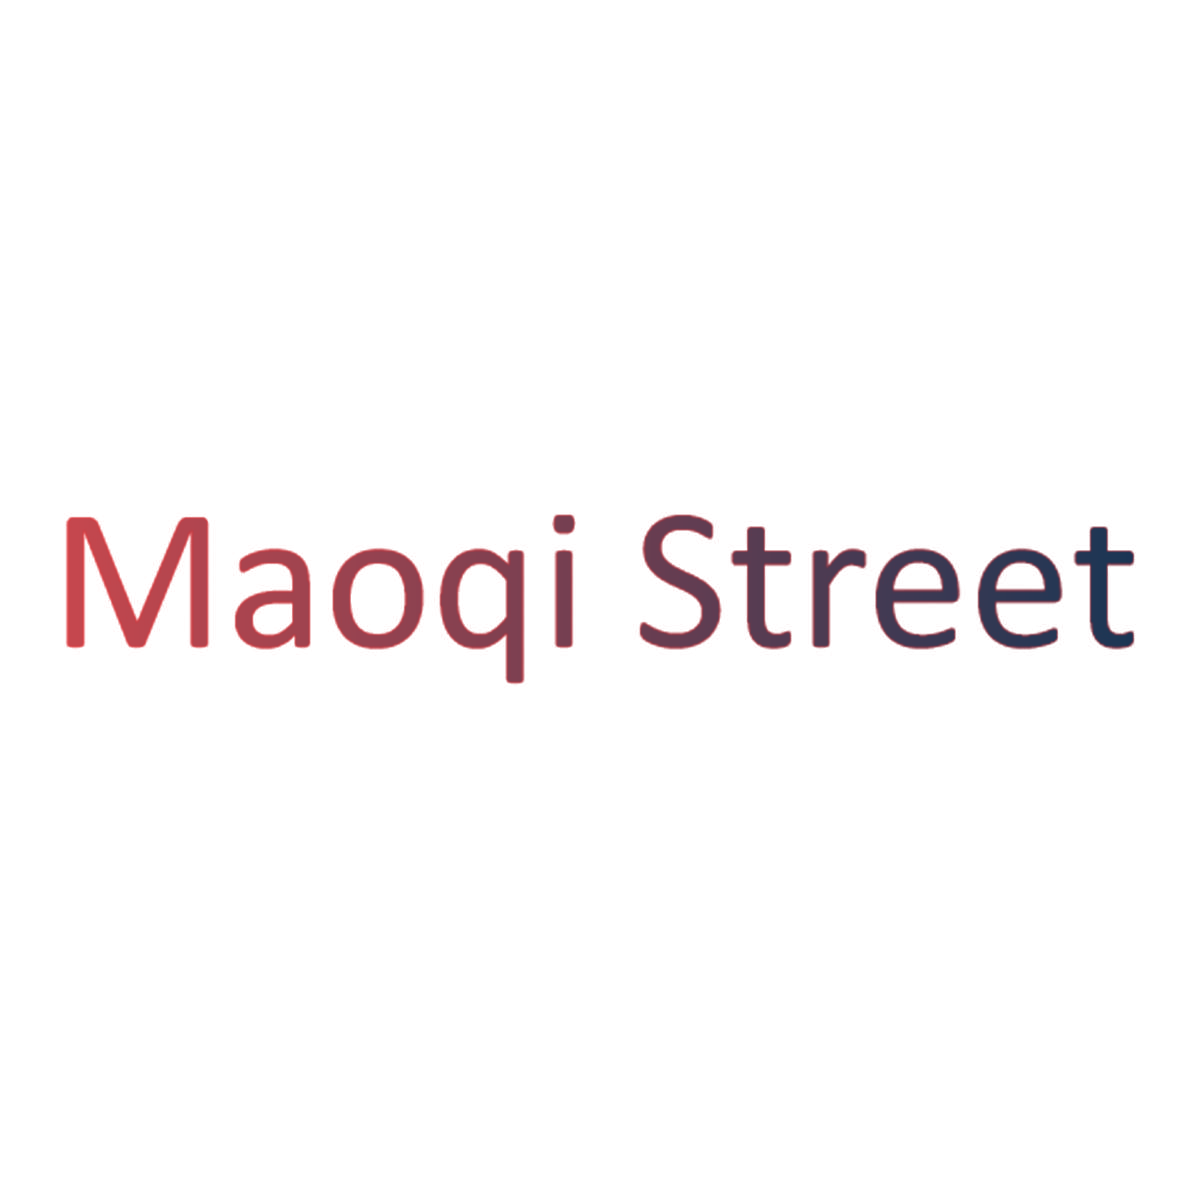 MAOQI STREET